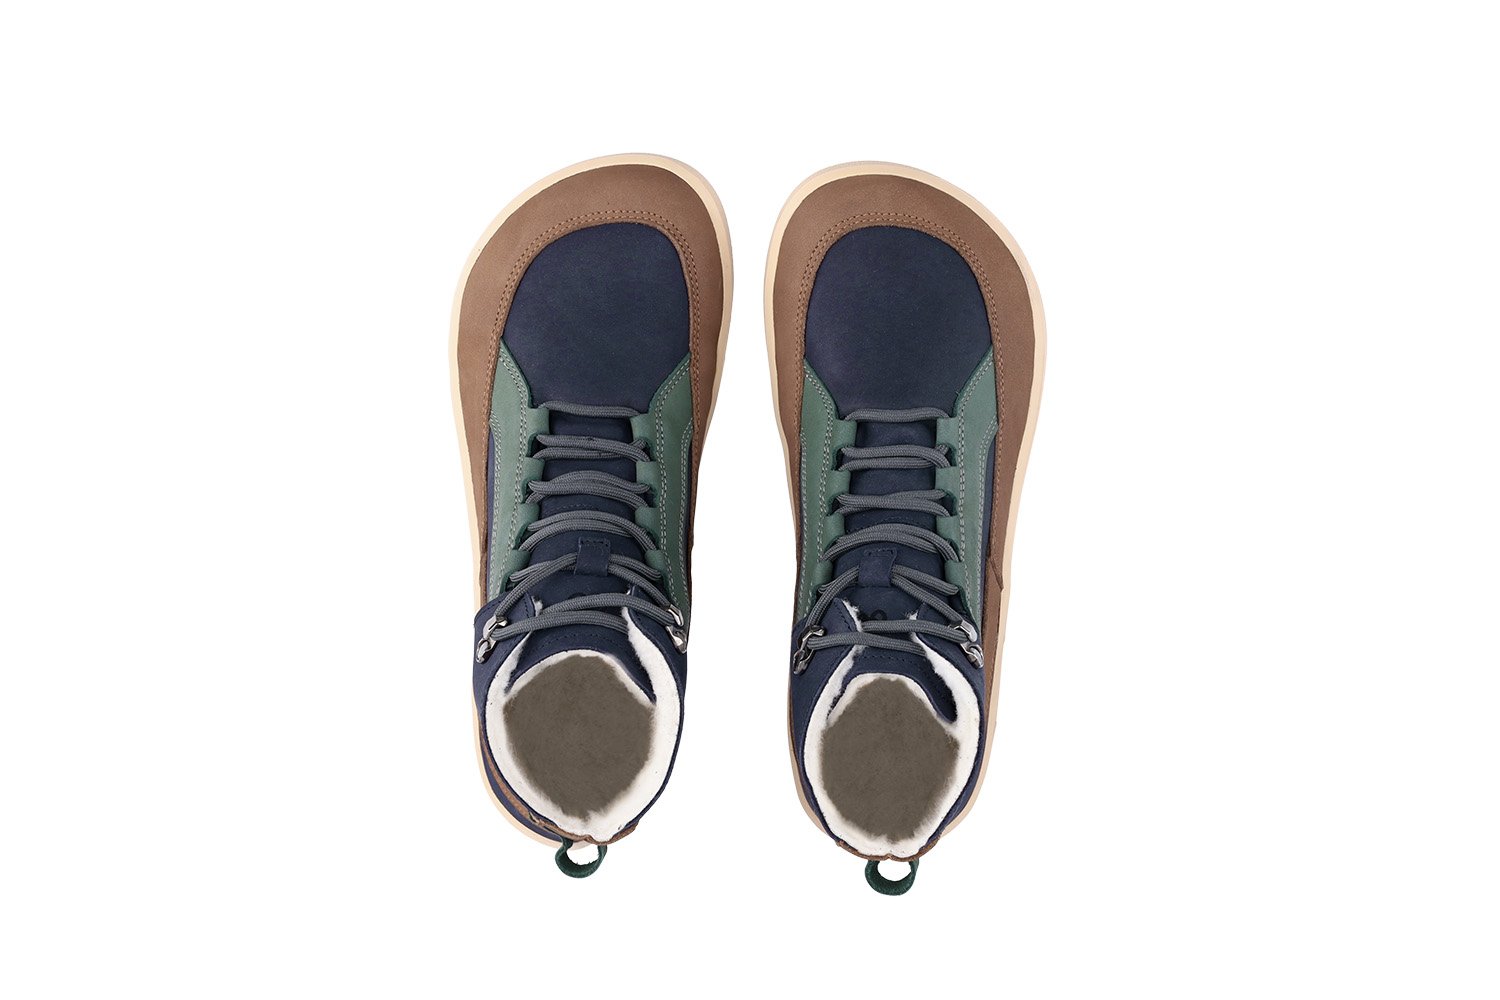 Barefoot Boots Be Lenka York - Navy, Brown & Beige | Be Lenka